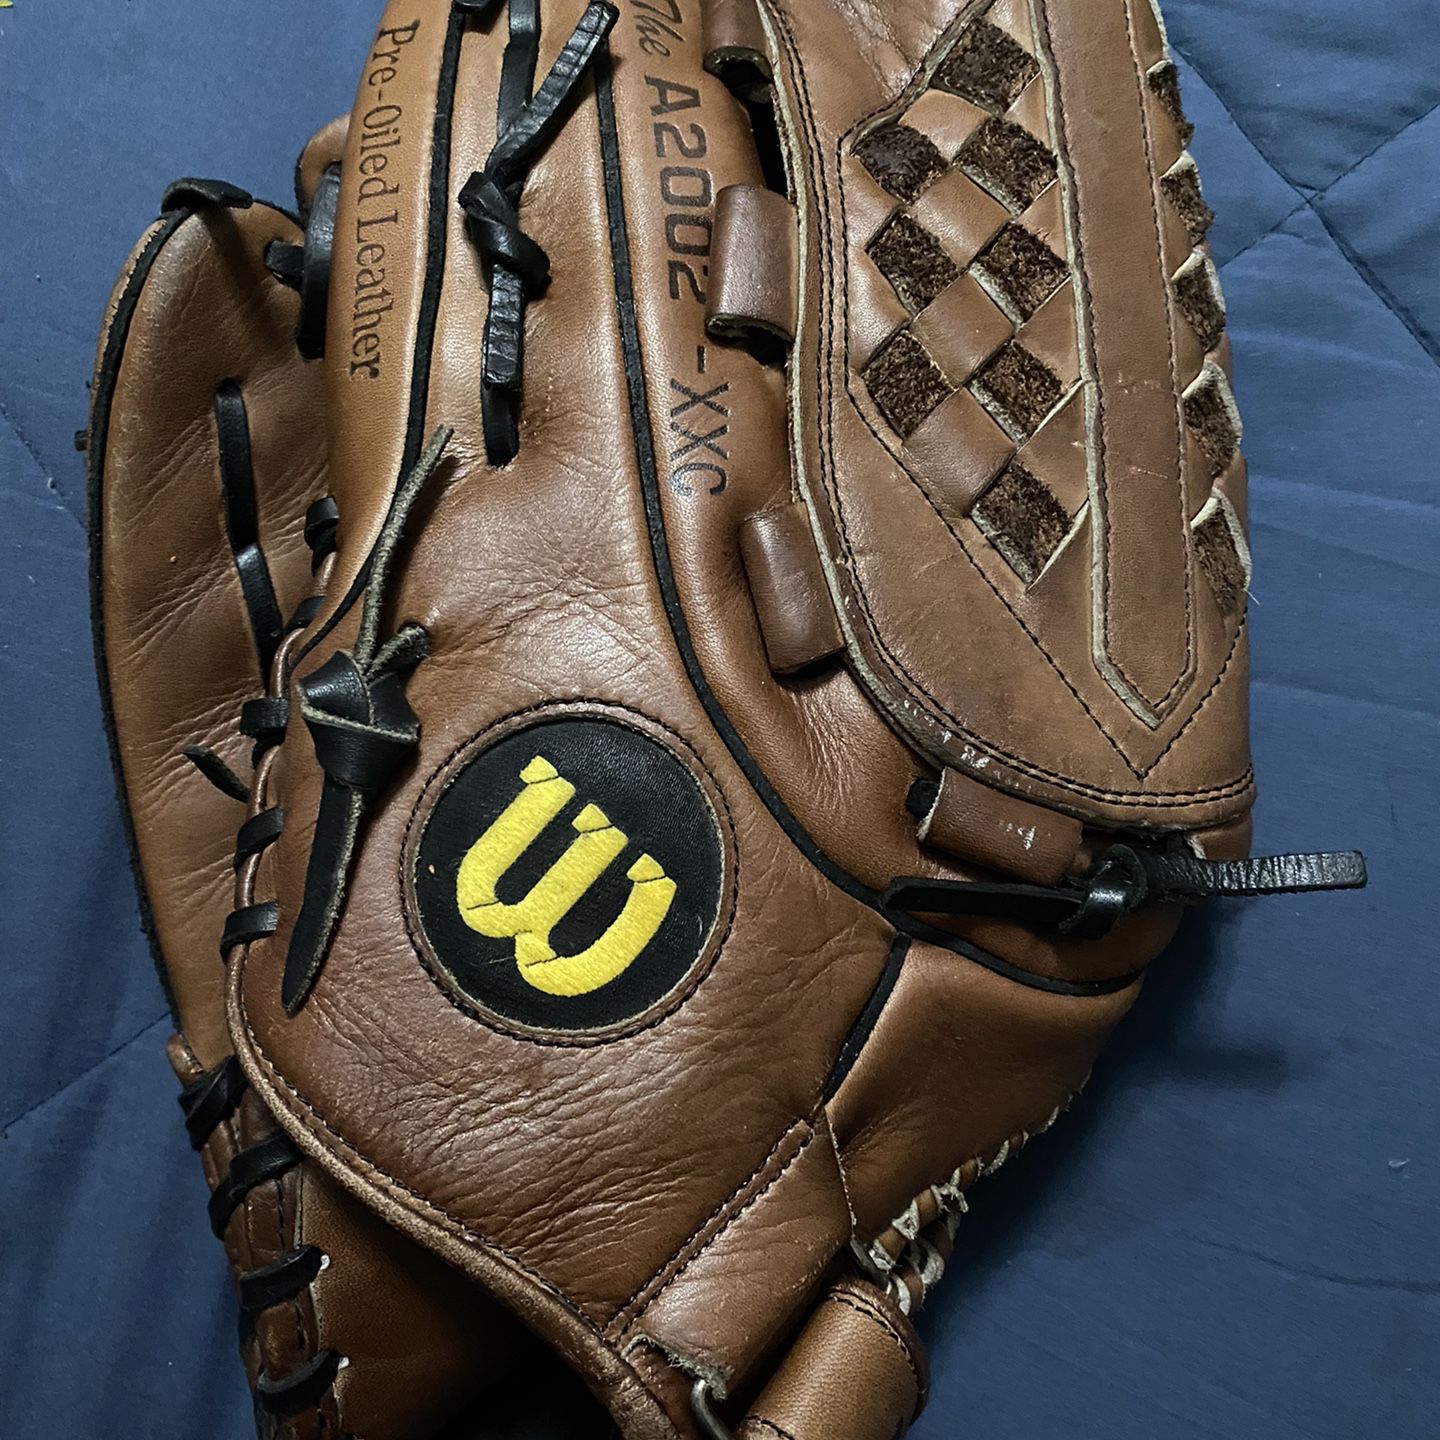 Left-Handed Throw Wilson A2000 Baseball Glove 